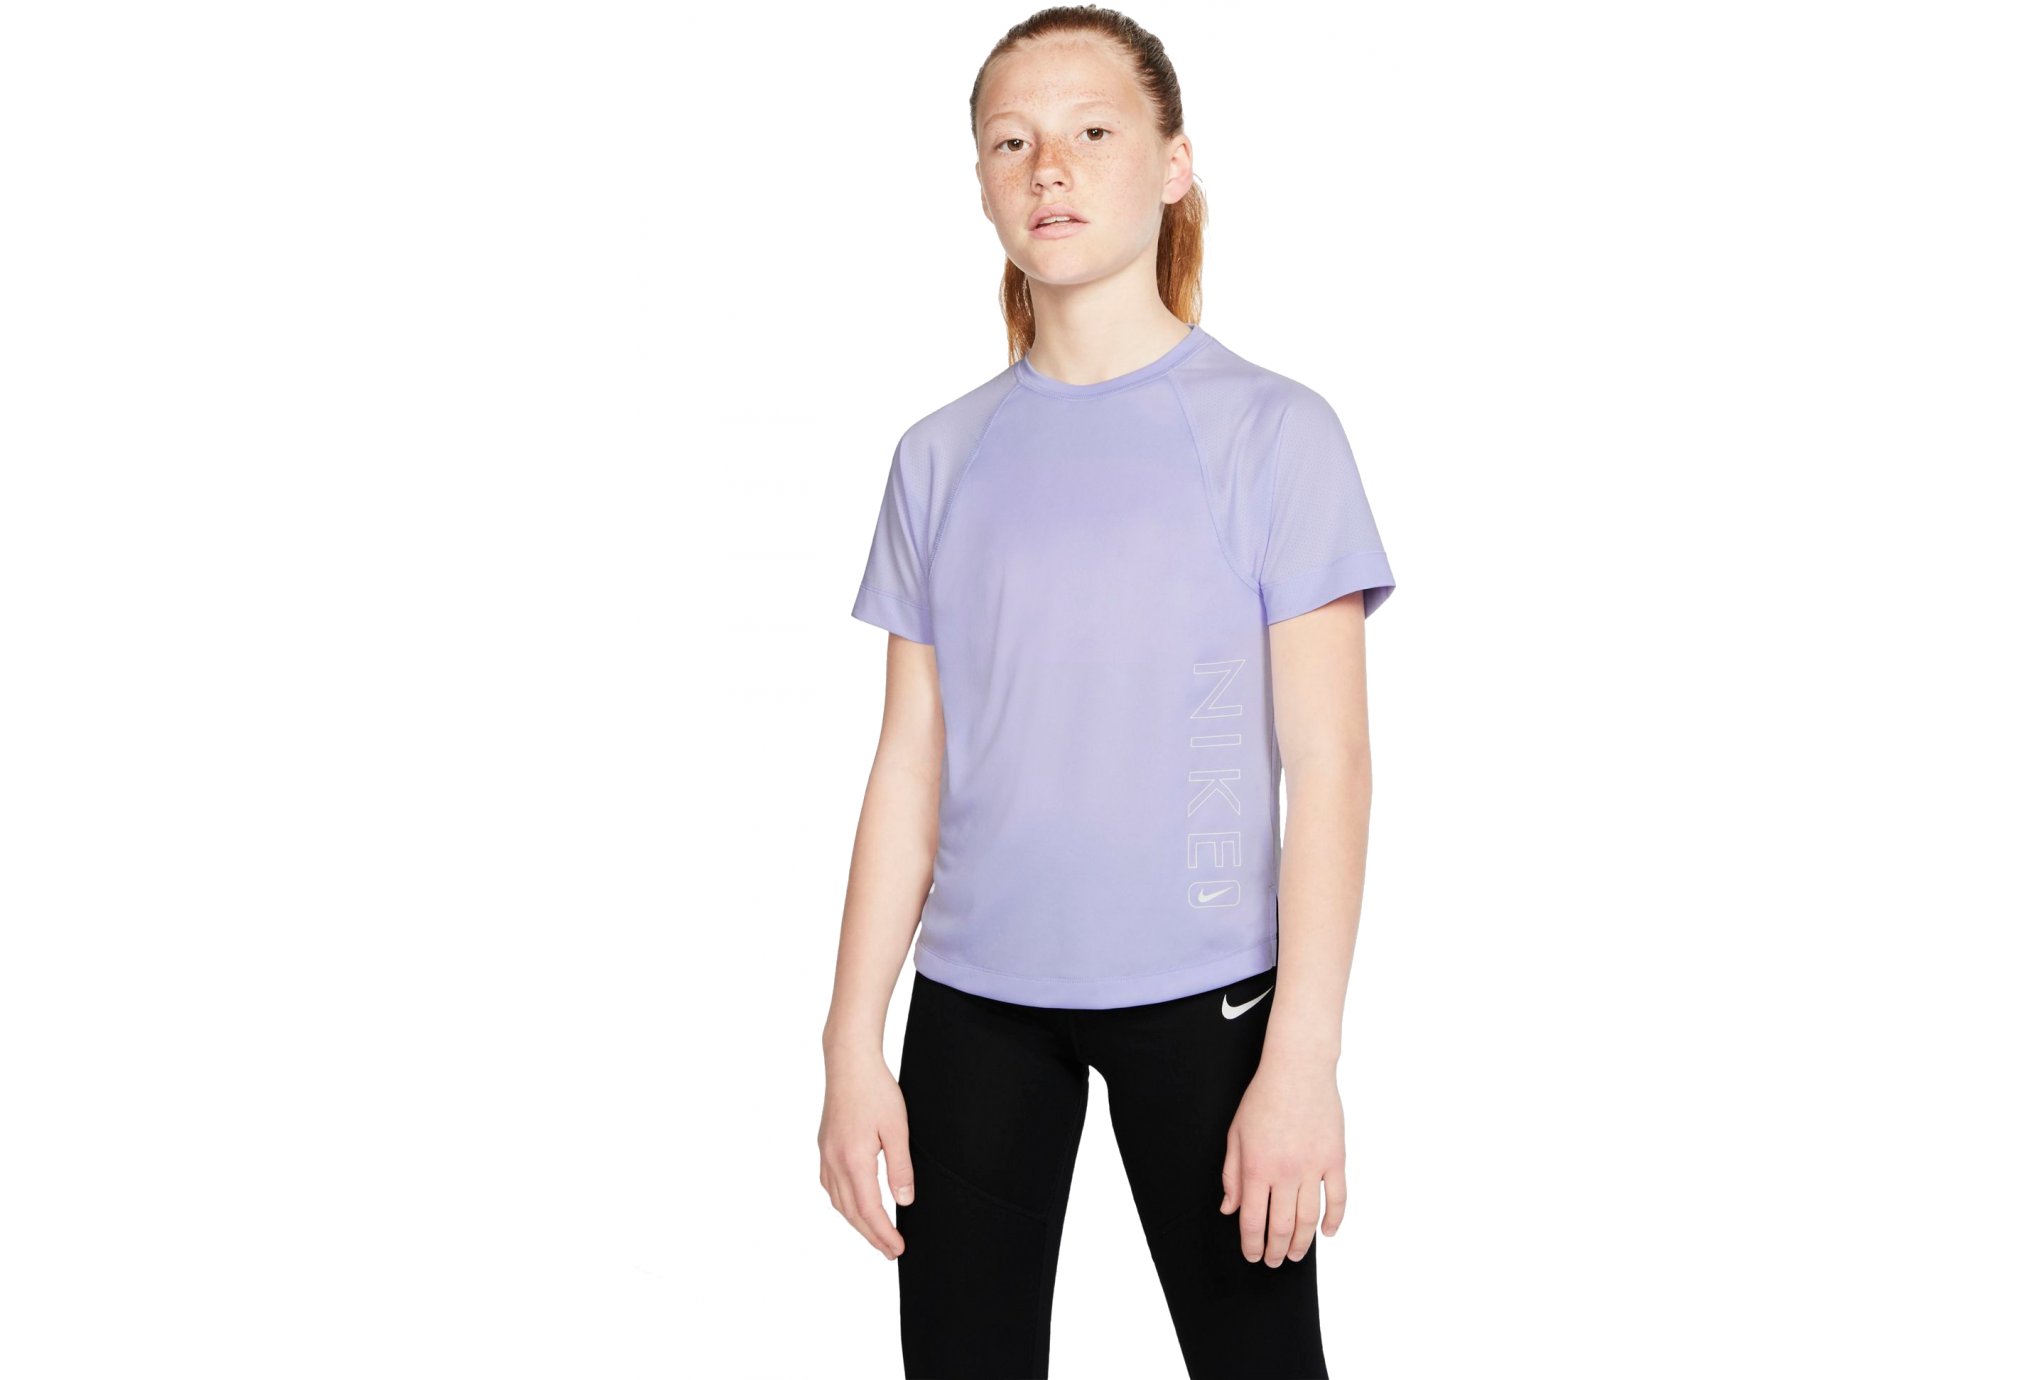 Nike Dry Fille vêtement running femme